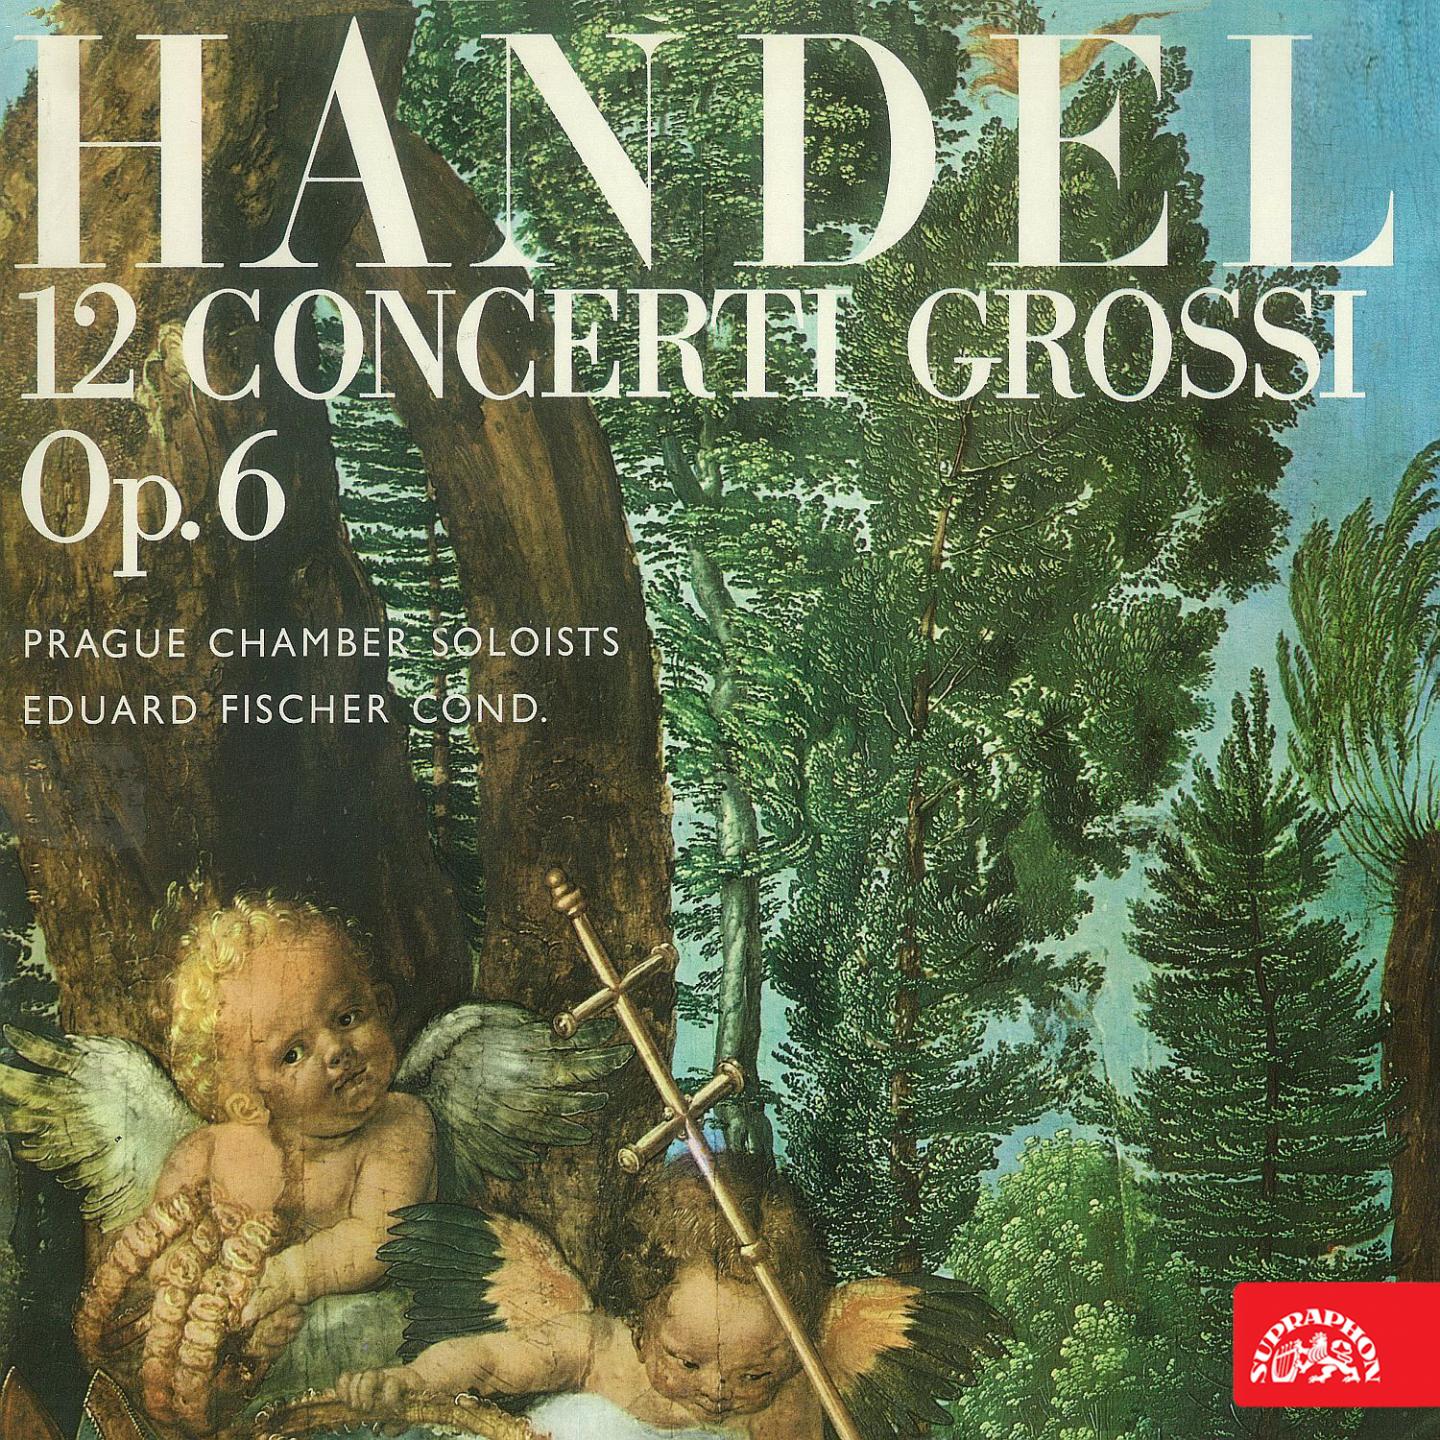 12 Concerti grossi, Op. 6, No. 8 in C Minor, HWV 326: III. Andante allegro